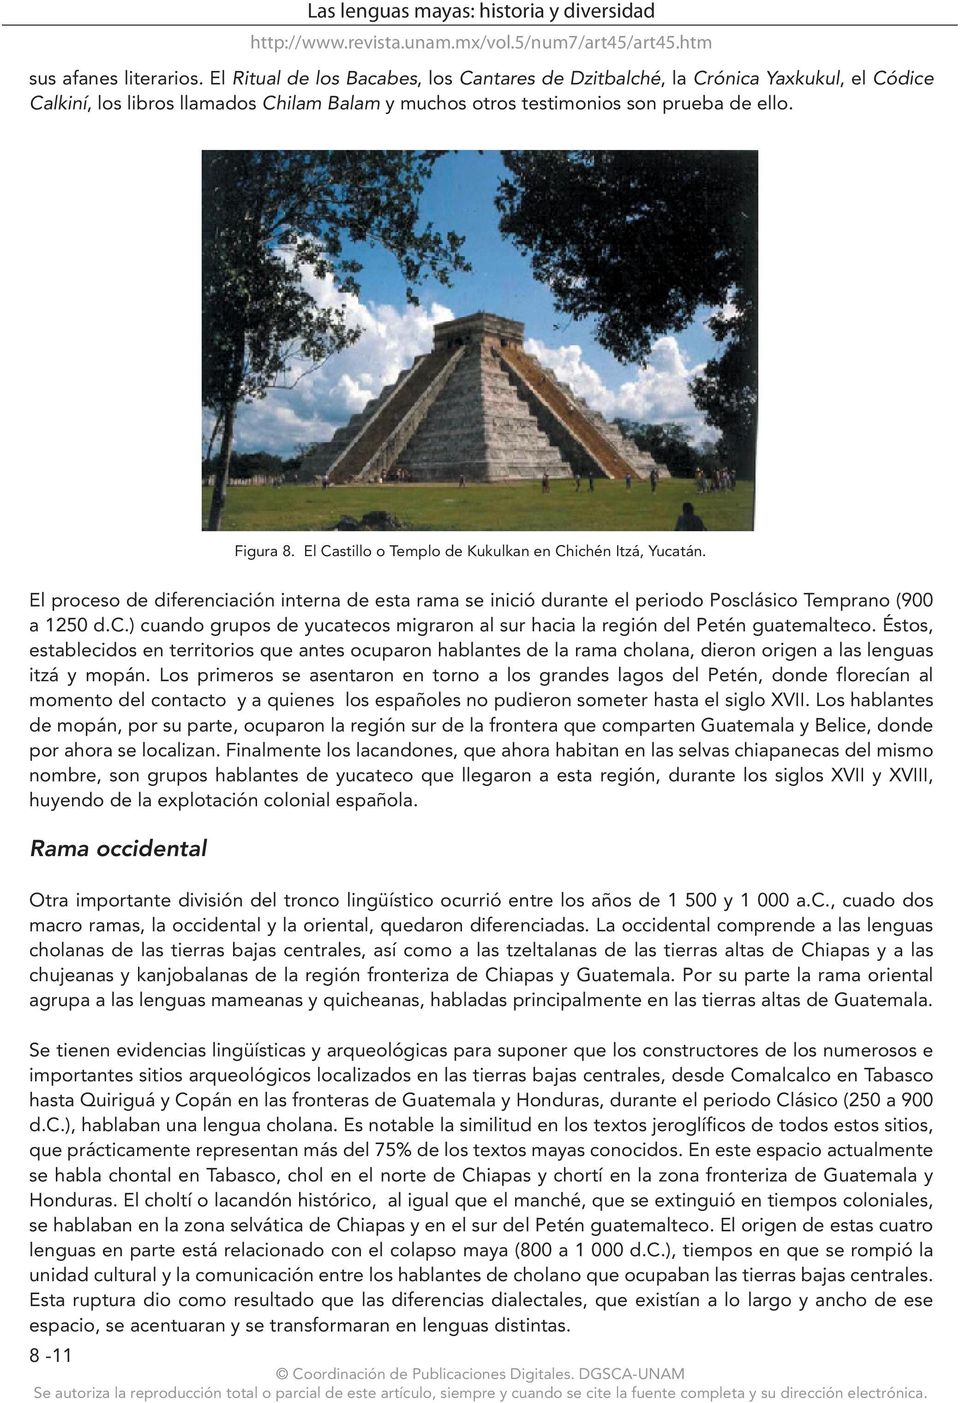 El Castillo o Templo de Kukulkan en Chichén Itzá, Yucatán. El proceso de diferenciación interna de esta rama se inició durante el periodo Posclásico Temprano (900 a 1250 d.c.) cuando grupos de yucatecos migraron al sur hacia la región del Petén guatemalteco.